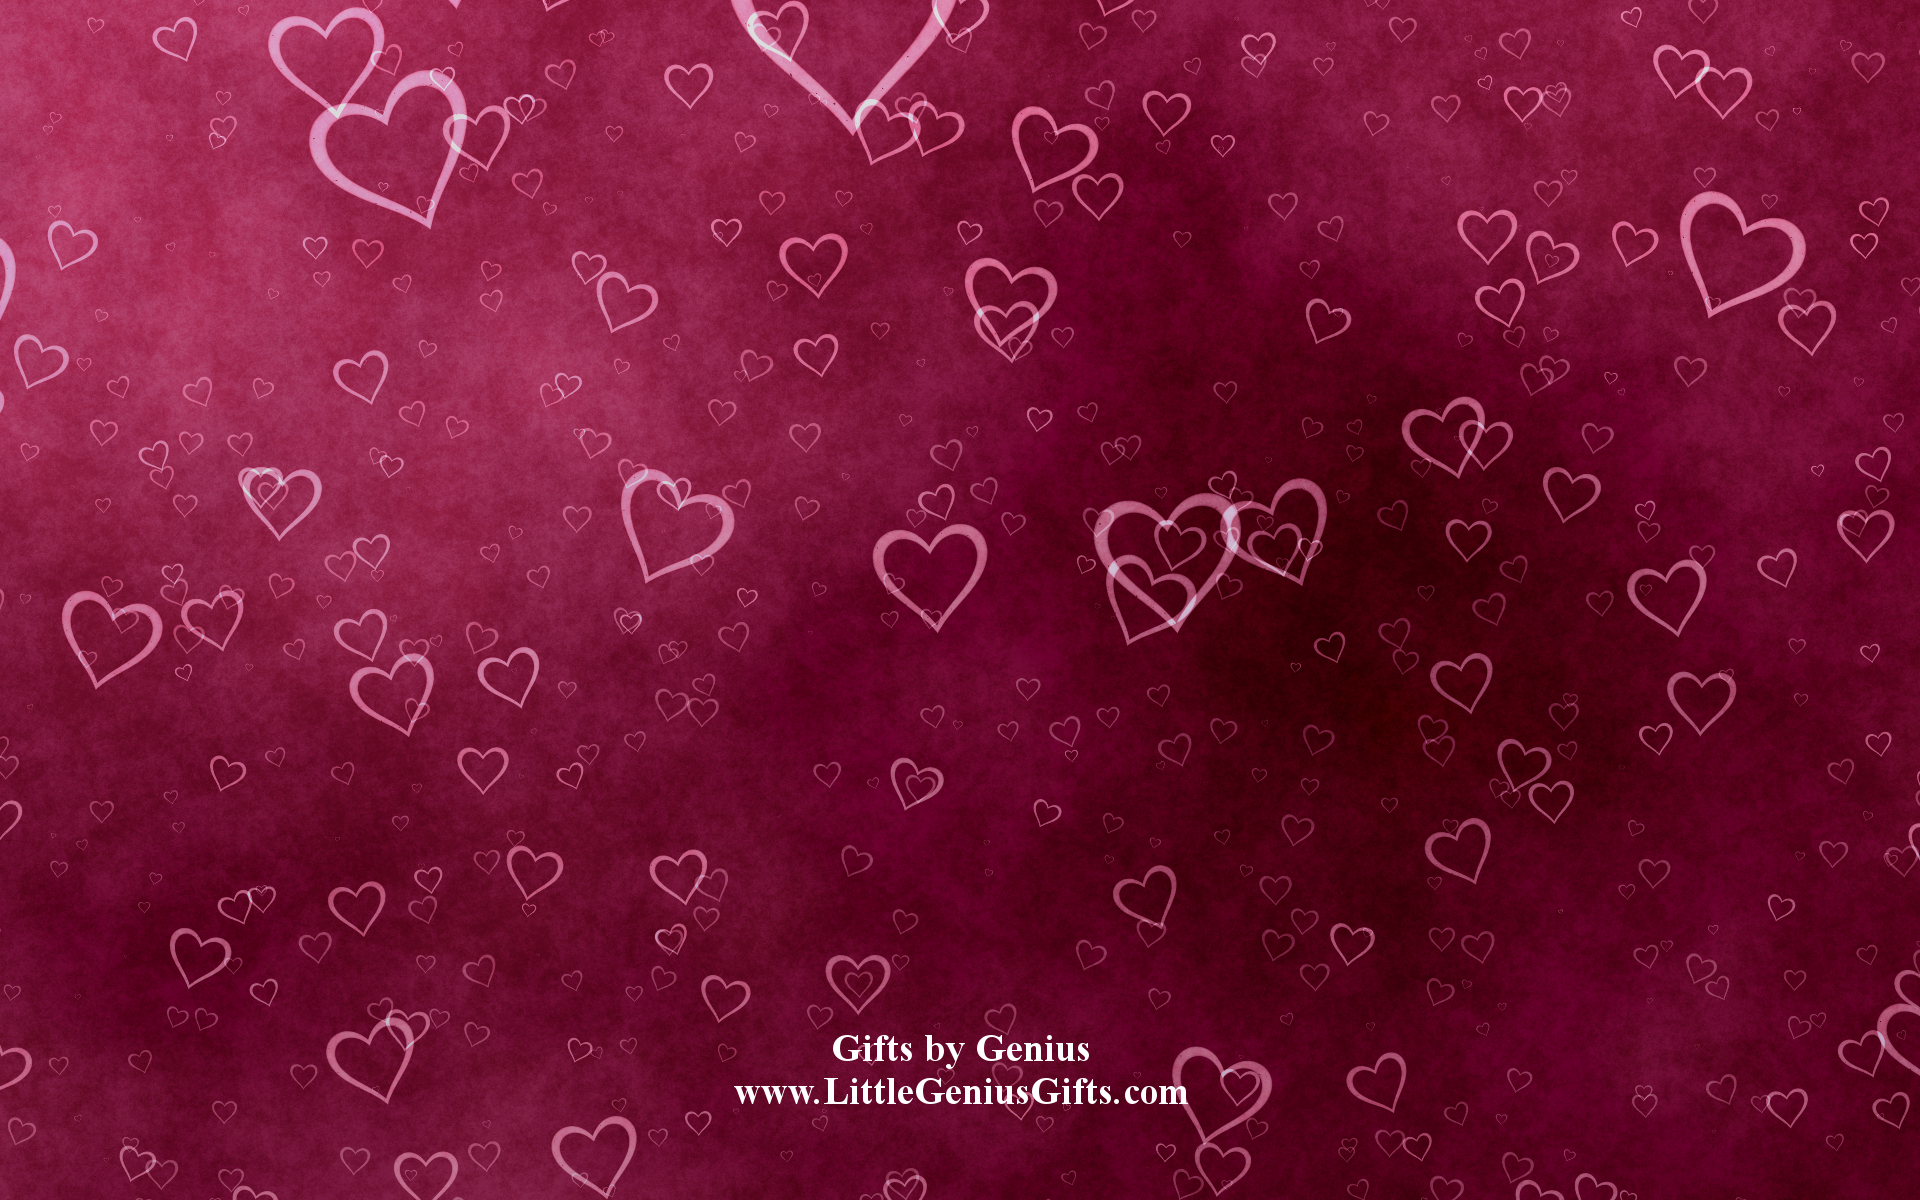 Hình nền máy tính đầy tình yêu và lãng mạn sẽ giúp bạn thăng hoa trong Ngày Valentine. Hãy chiêm ngưỡng hình ảnh liên quan để chọn cho mình một phông màn hình đẹp nhất cho ngày đặc biệt này.